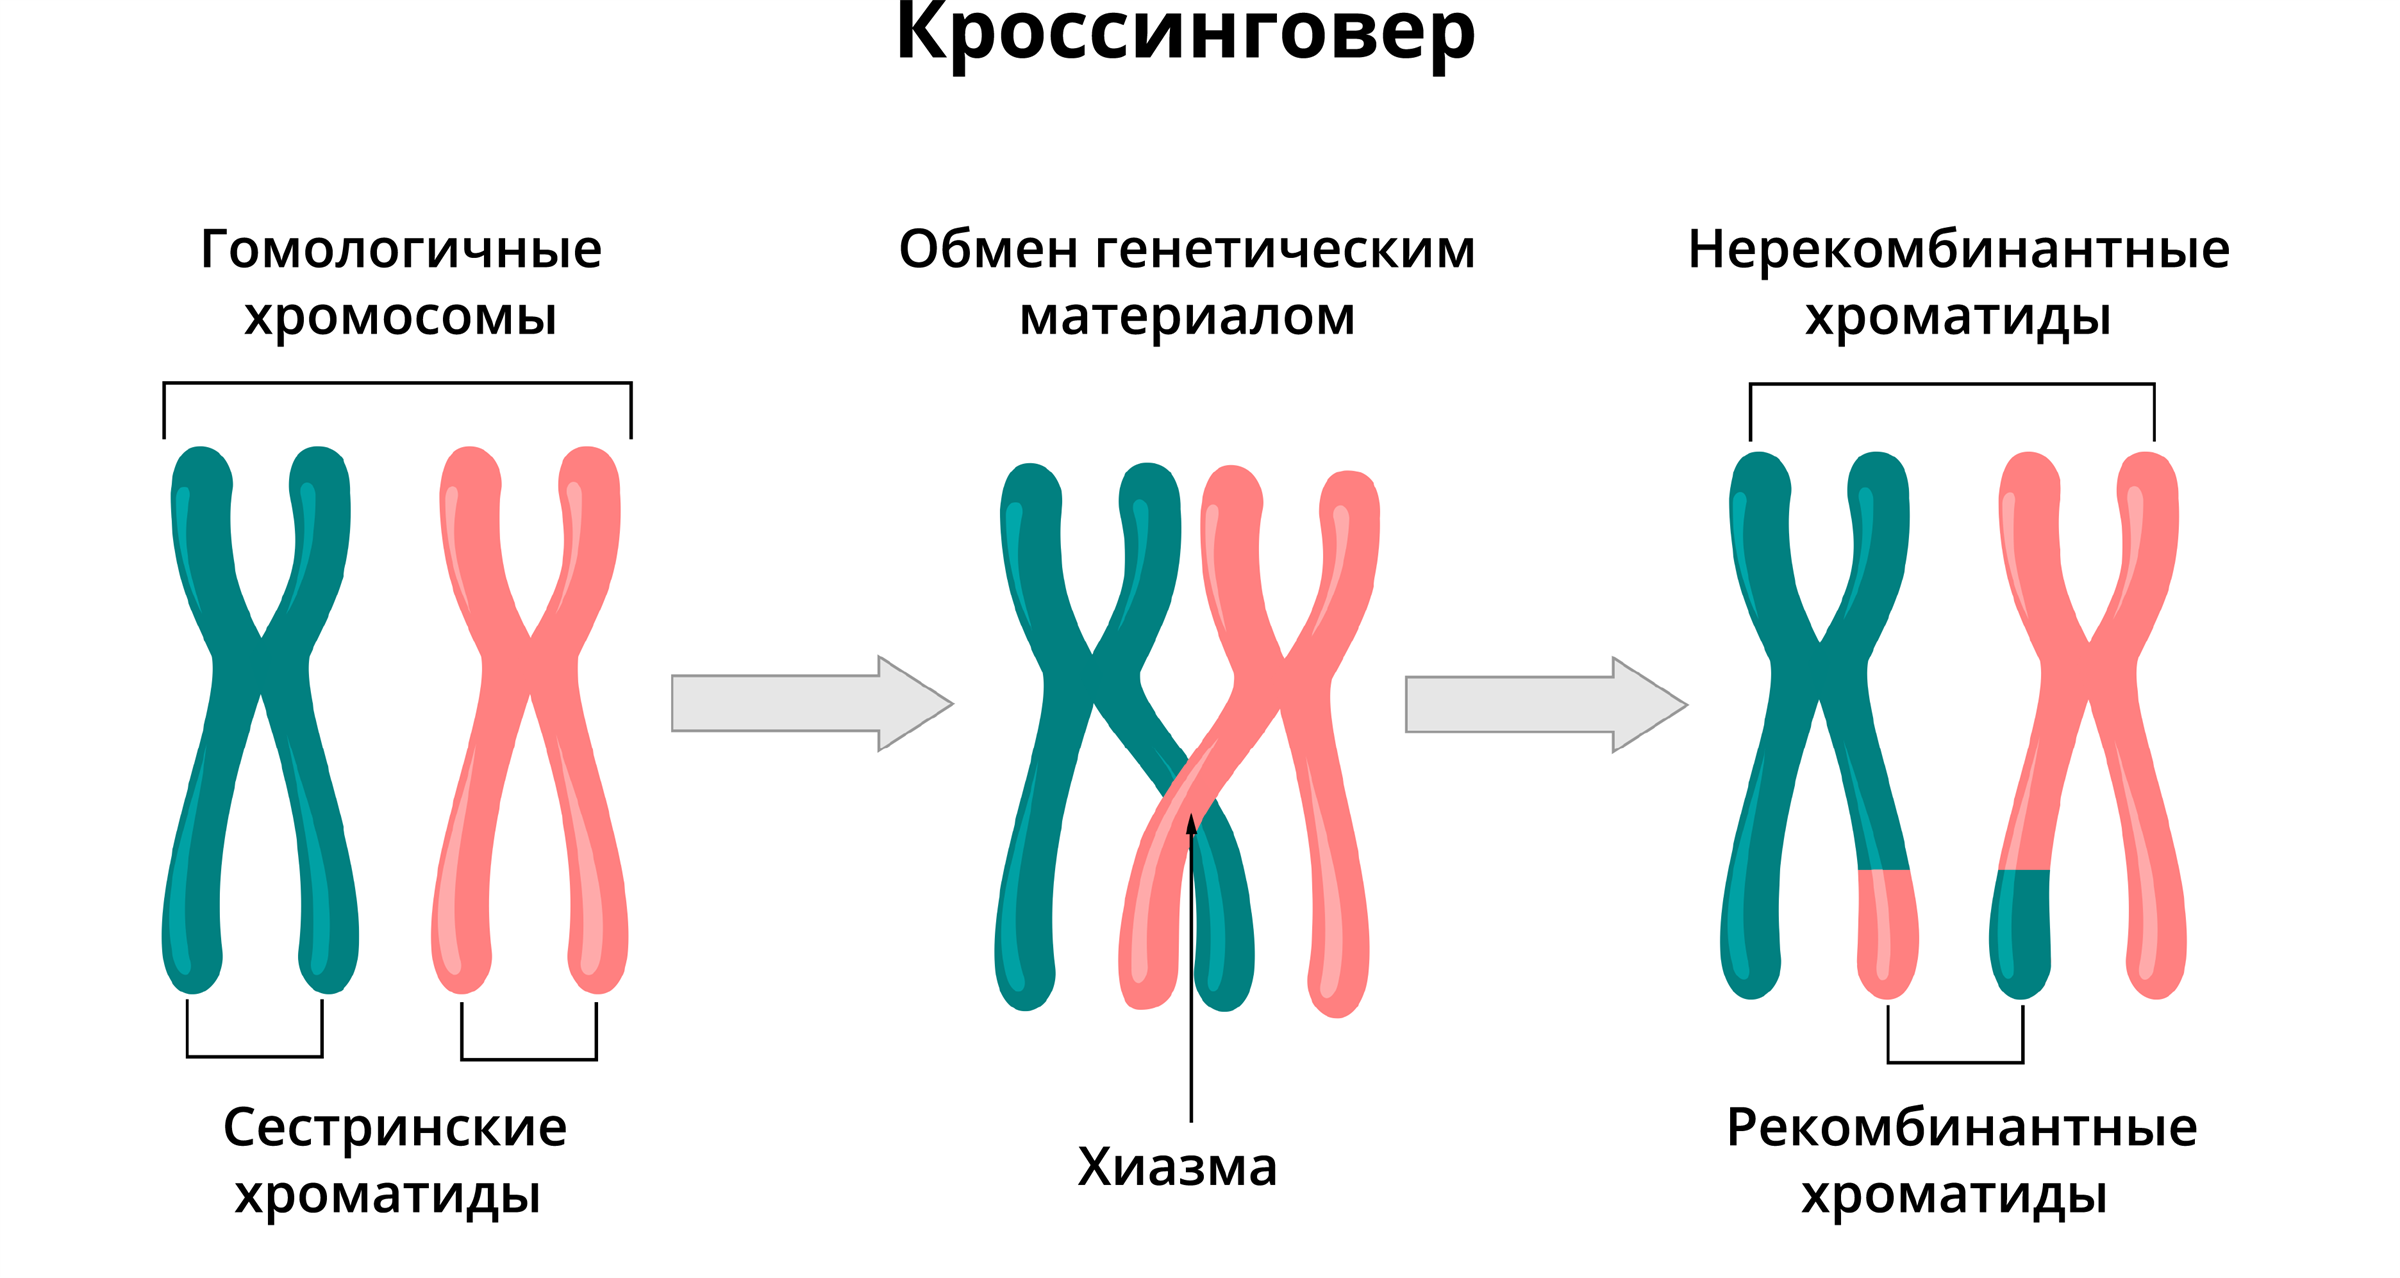 Конъюгация гомологичных хромосом в мейозе 1. Схема кроссинговера биология. Схема кроссинговера при мейозе. Схема конъюгации хромосом. При мейозе расхождение гомологичных хромосом происходит в